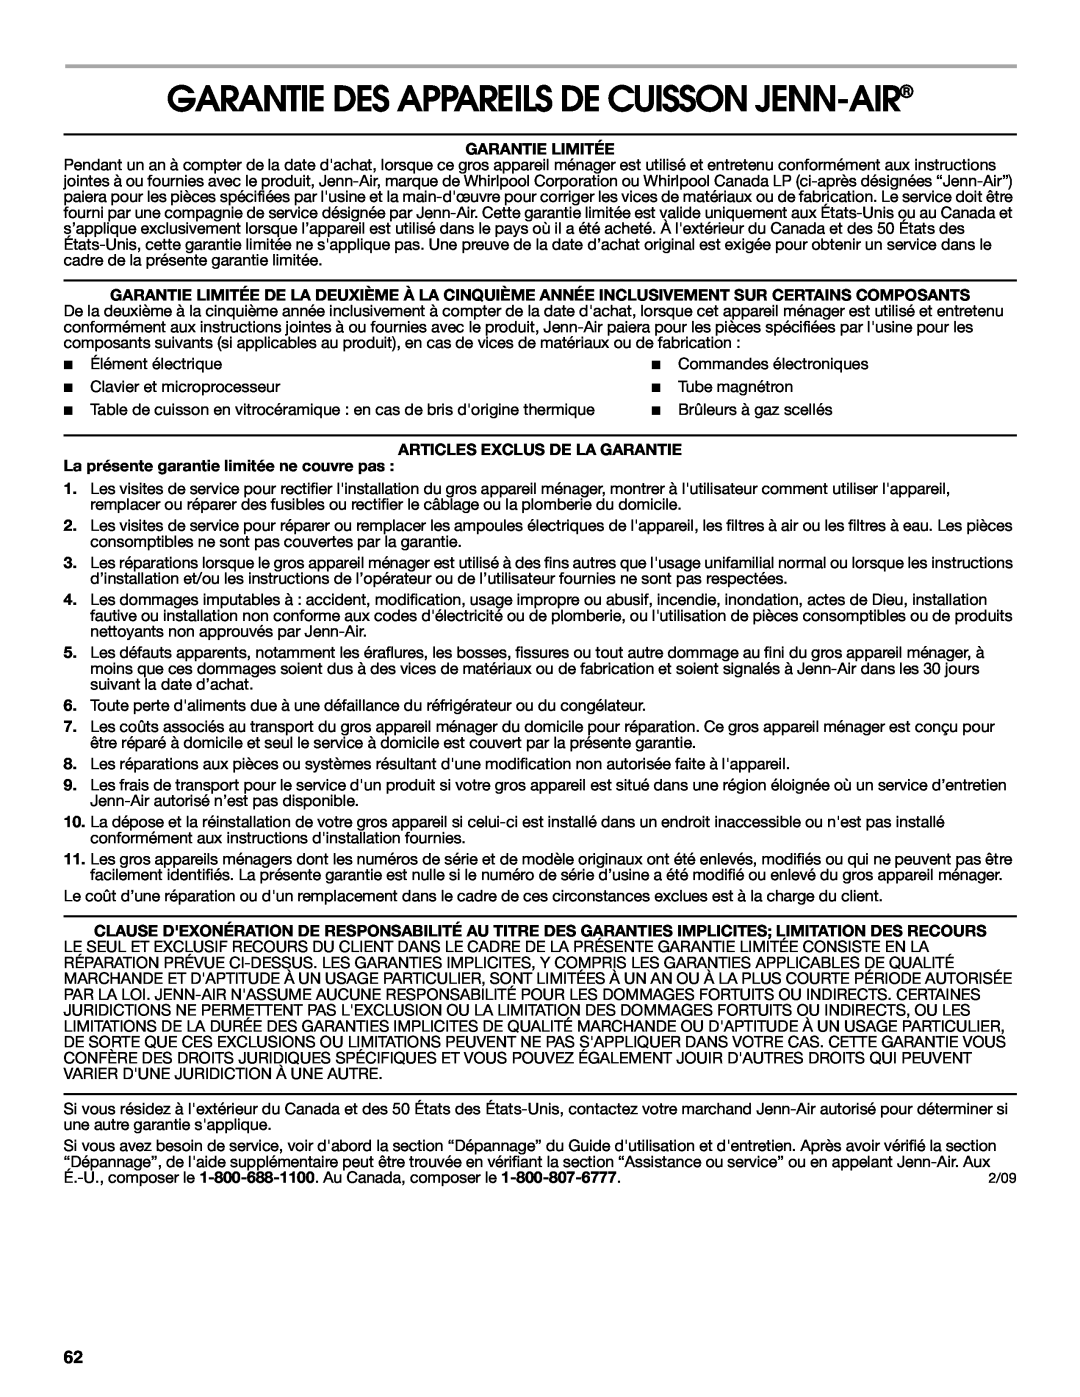 Jenn-Air JES8850, JES8860 Garantie Des Appareils De Cuisson Jenn-Air, Garantie Limitée, Articles Exclus De La Garantie 